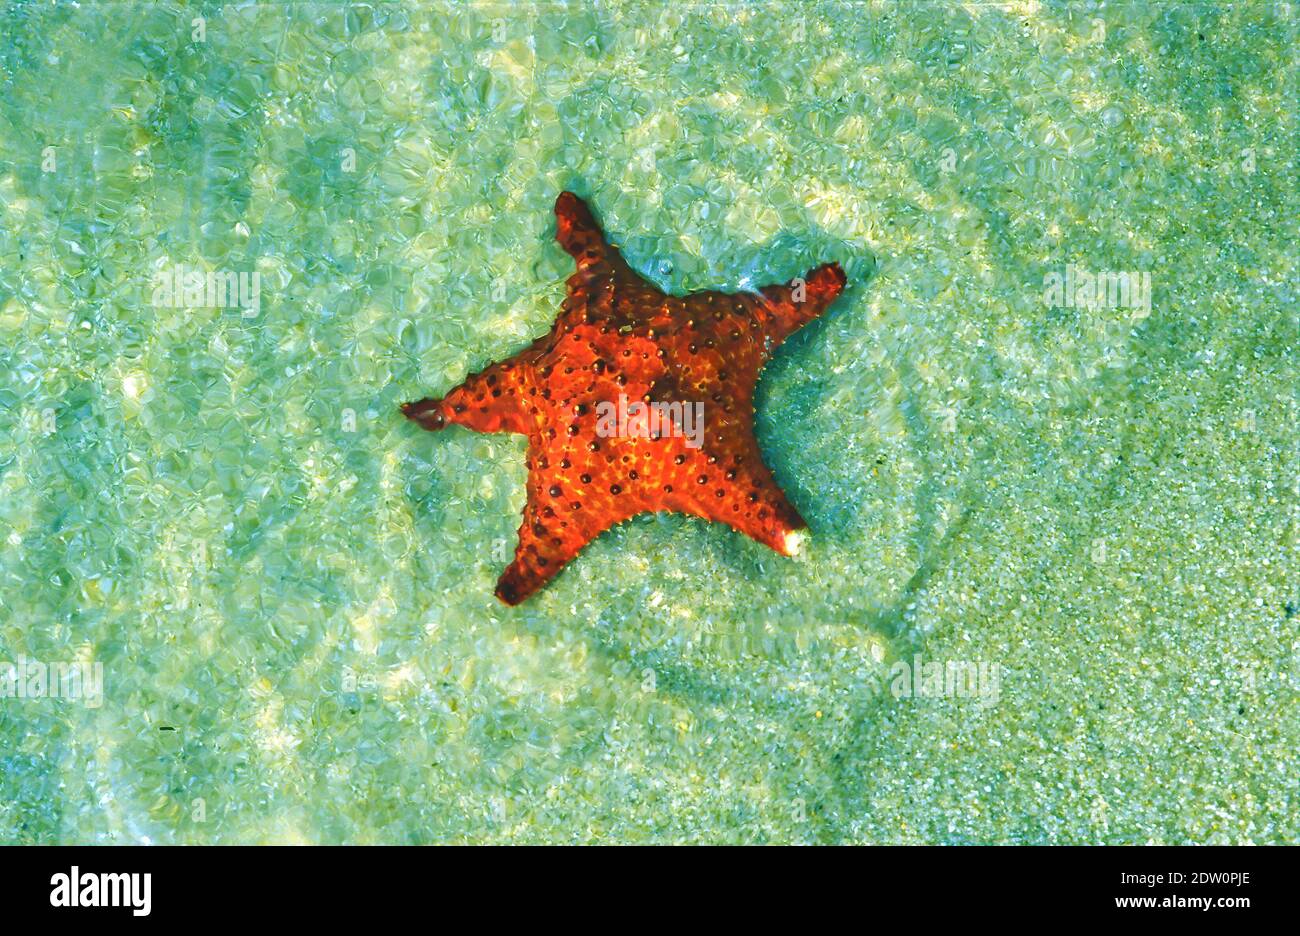 Vue sur l'étoile de mer rouge isolée (oreaster reticulatus) dans le sable de l'eau claire vert peu profonde sur la plage tropicale des caraïbes - Belize, Amérique centrale (Focus Banque D'Images